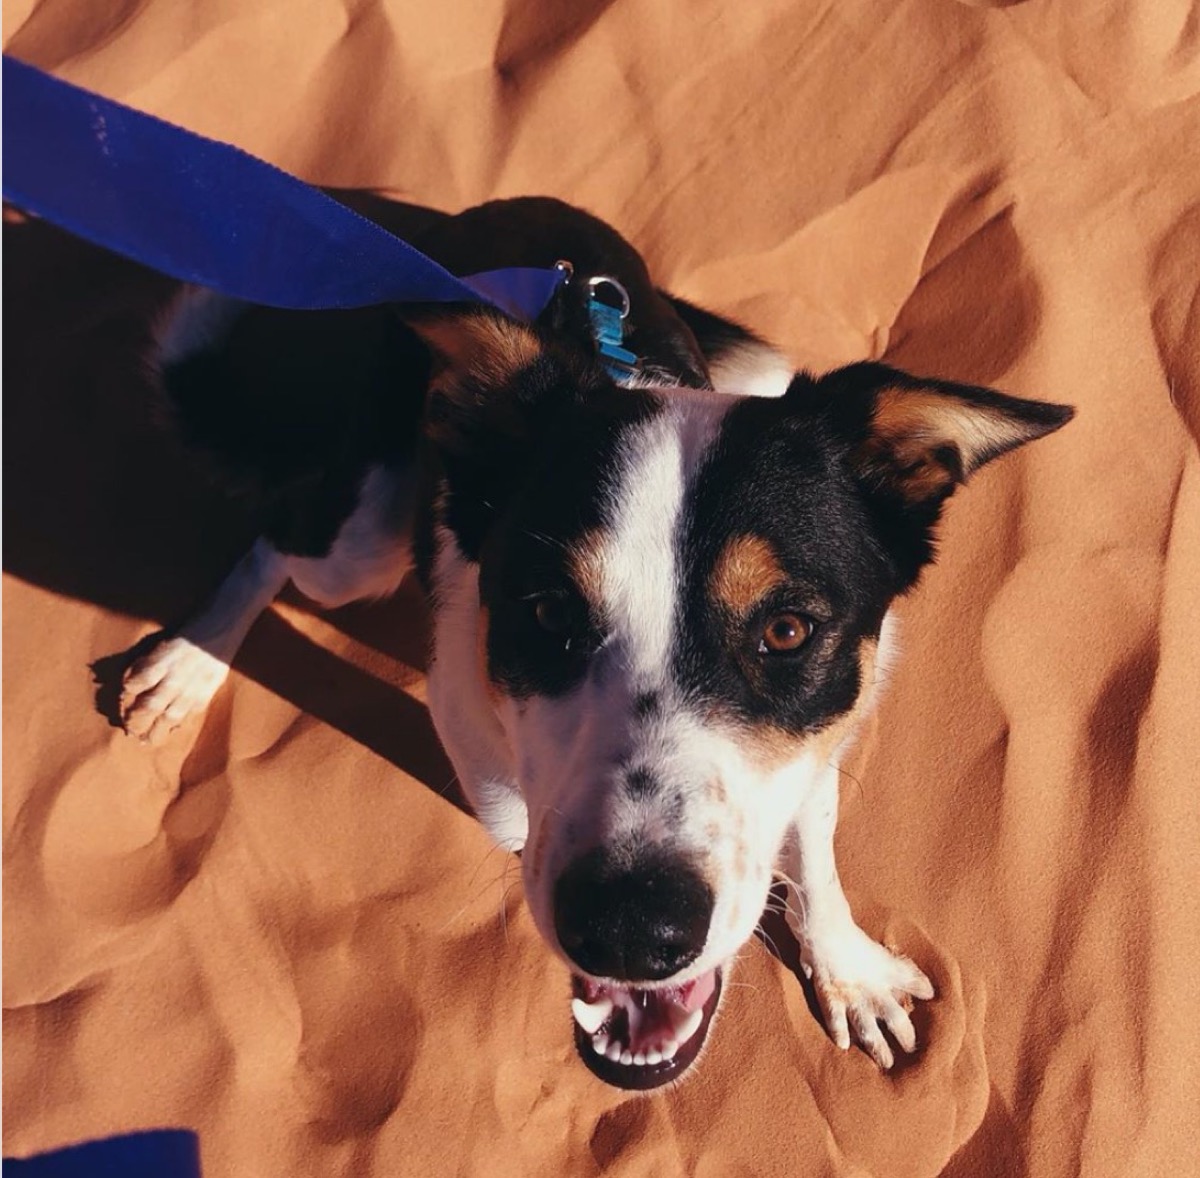 Ava Phillippe's dog Benji in sand